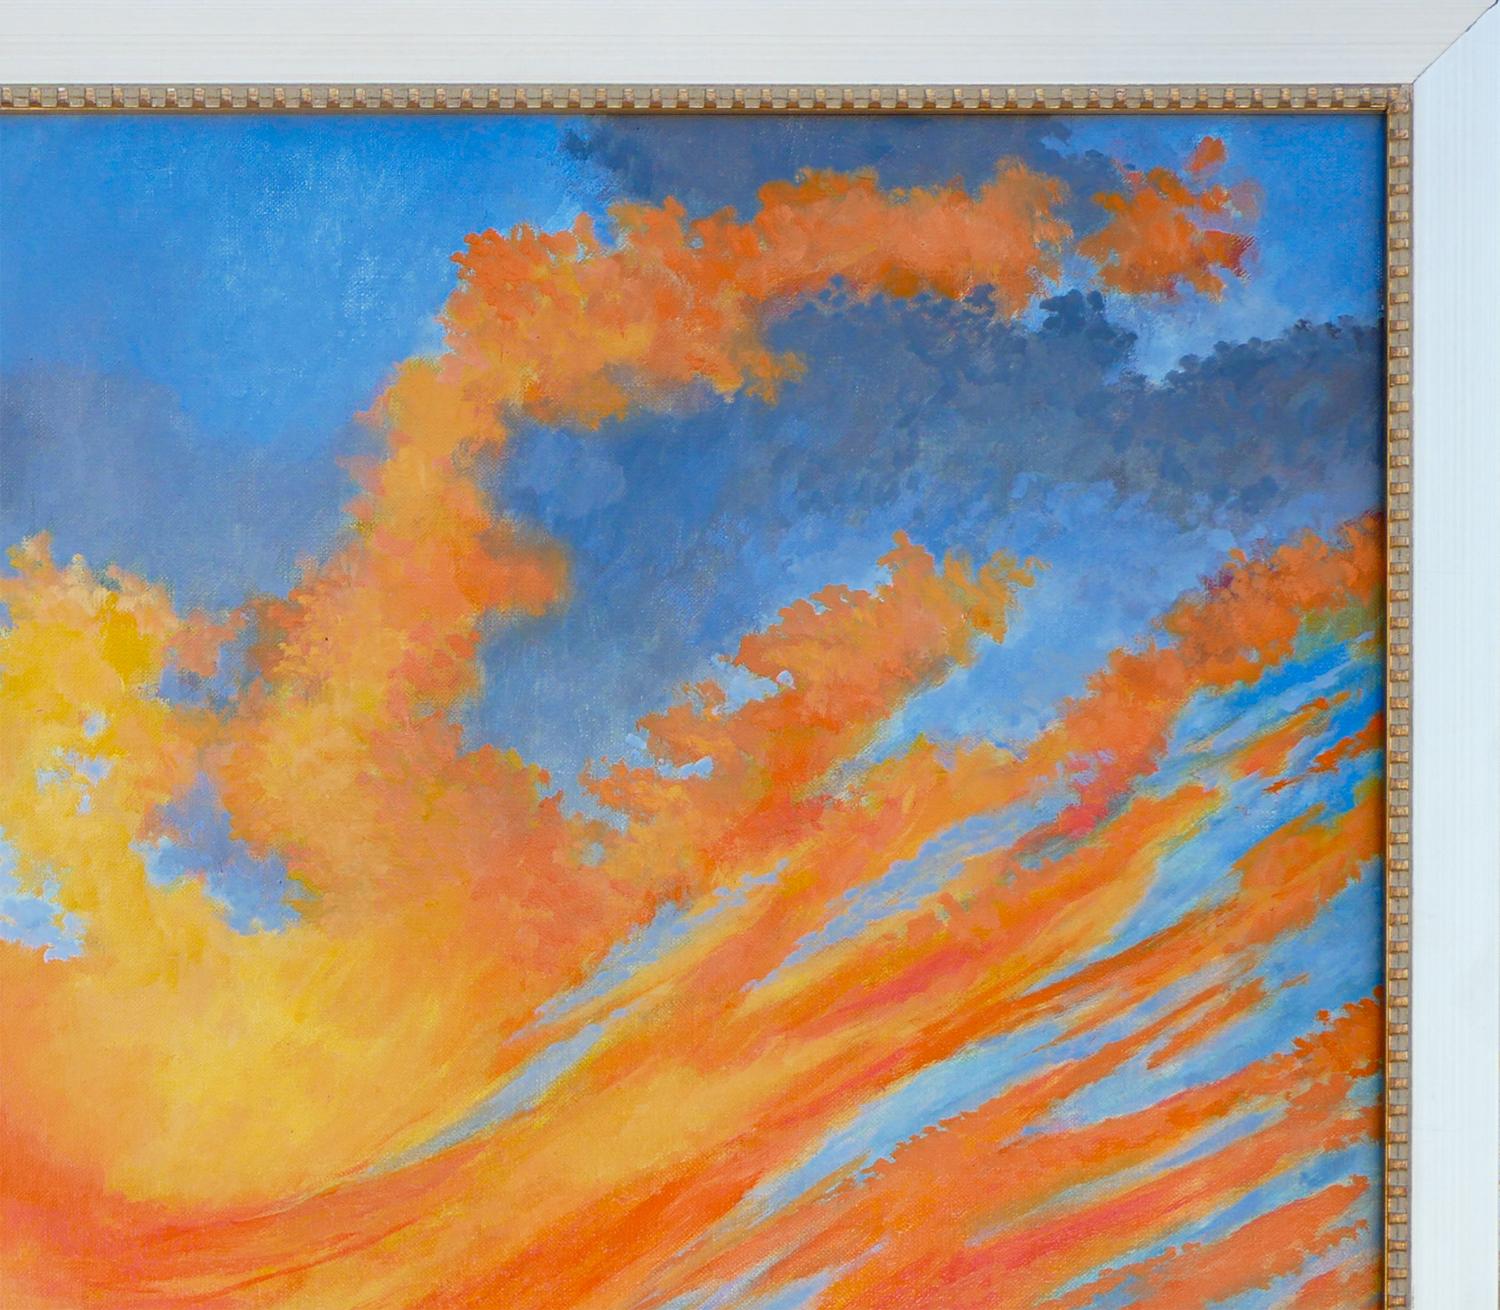 Blaue, orange und gelbe abstrakte impressionistische Landschaft des Künstlers Henri Gadbois aus Houston, TX. Das Gemälde zeigt einen Sonnenuntergang mit blauem und orangefarbenem Himmel in einer Gebirgslandschaft. Signiert vom Künstler in der